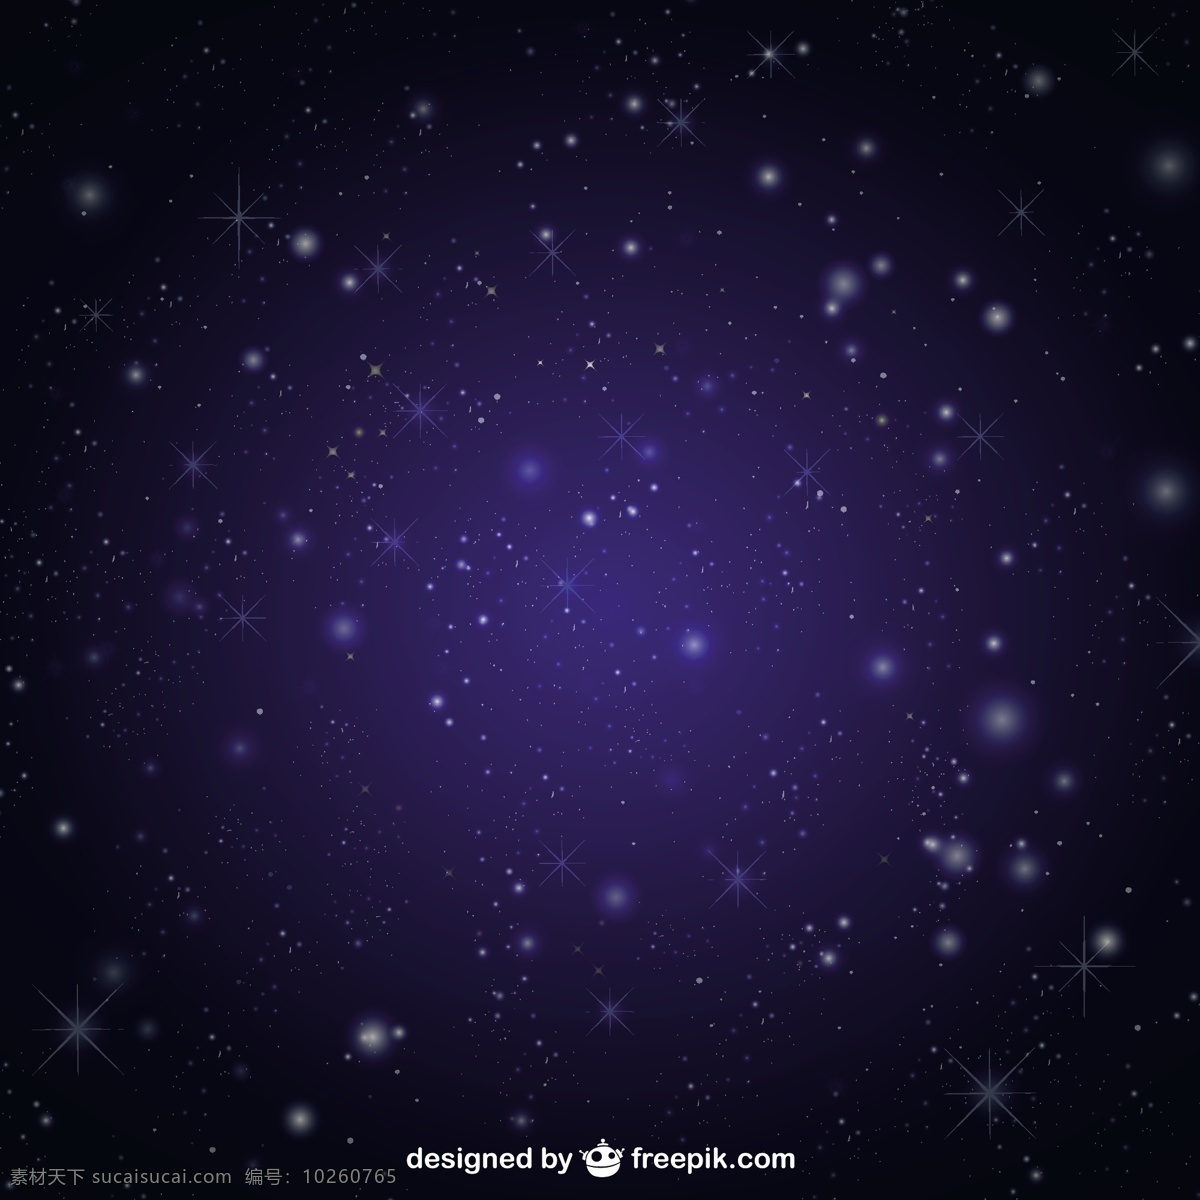 星星图案 背景 抽象 天空 蓝色 星光 空间 银河 夜晚 星星 繁星